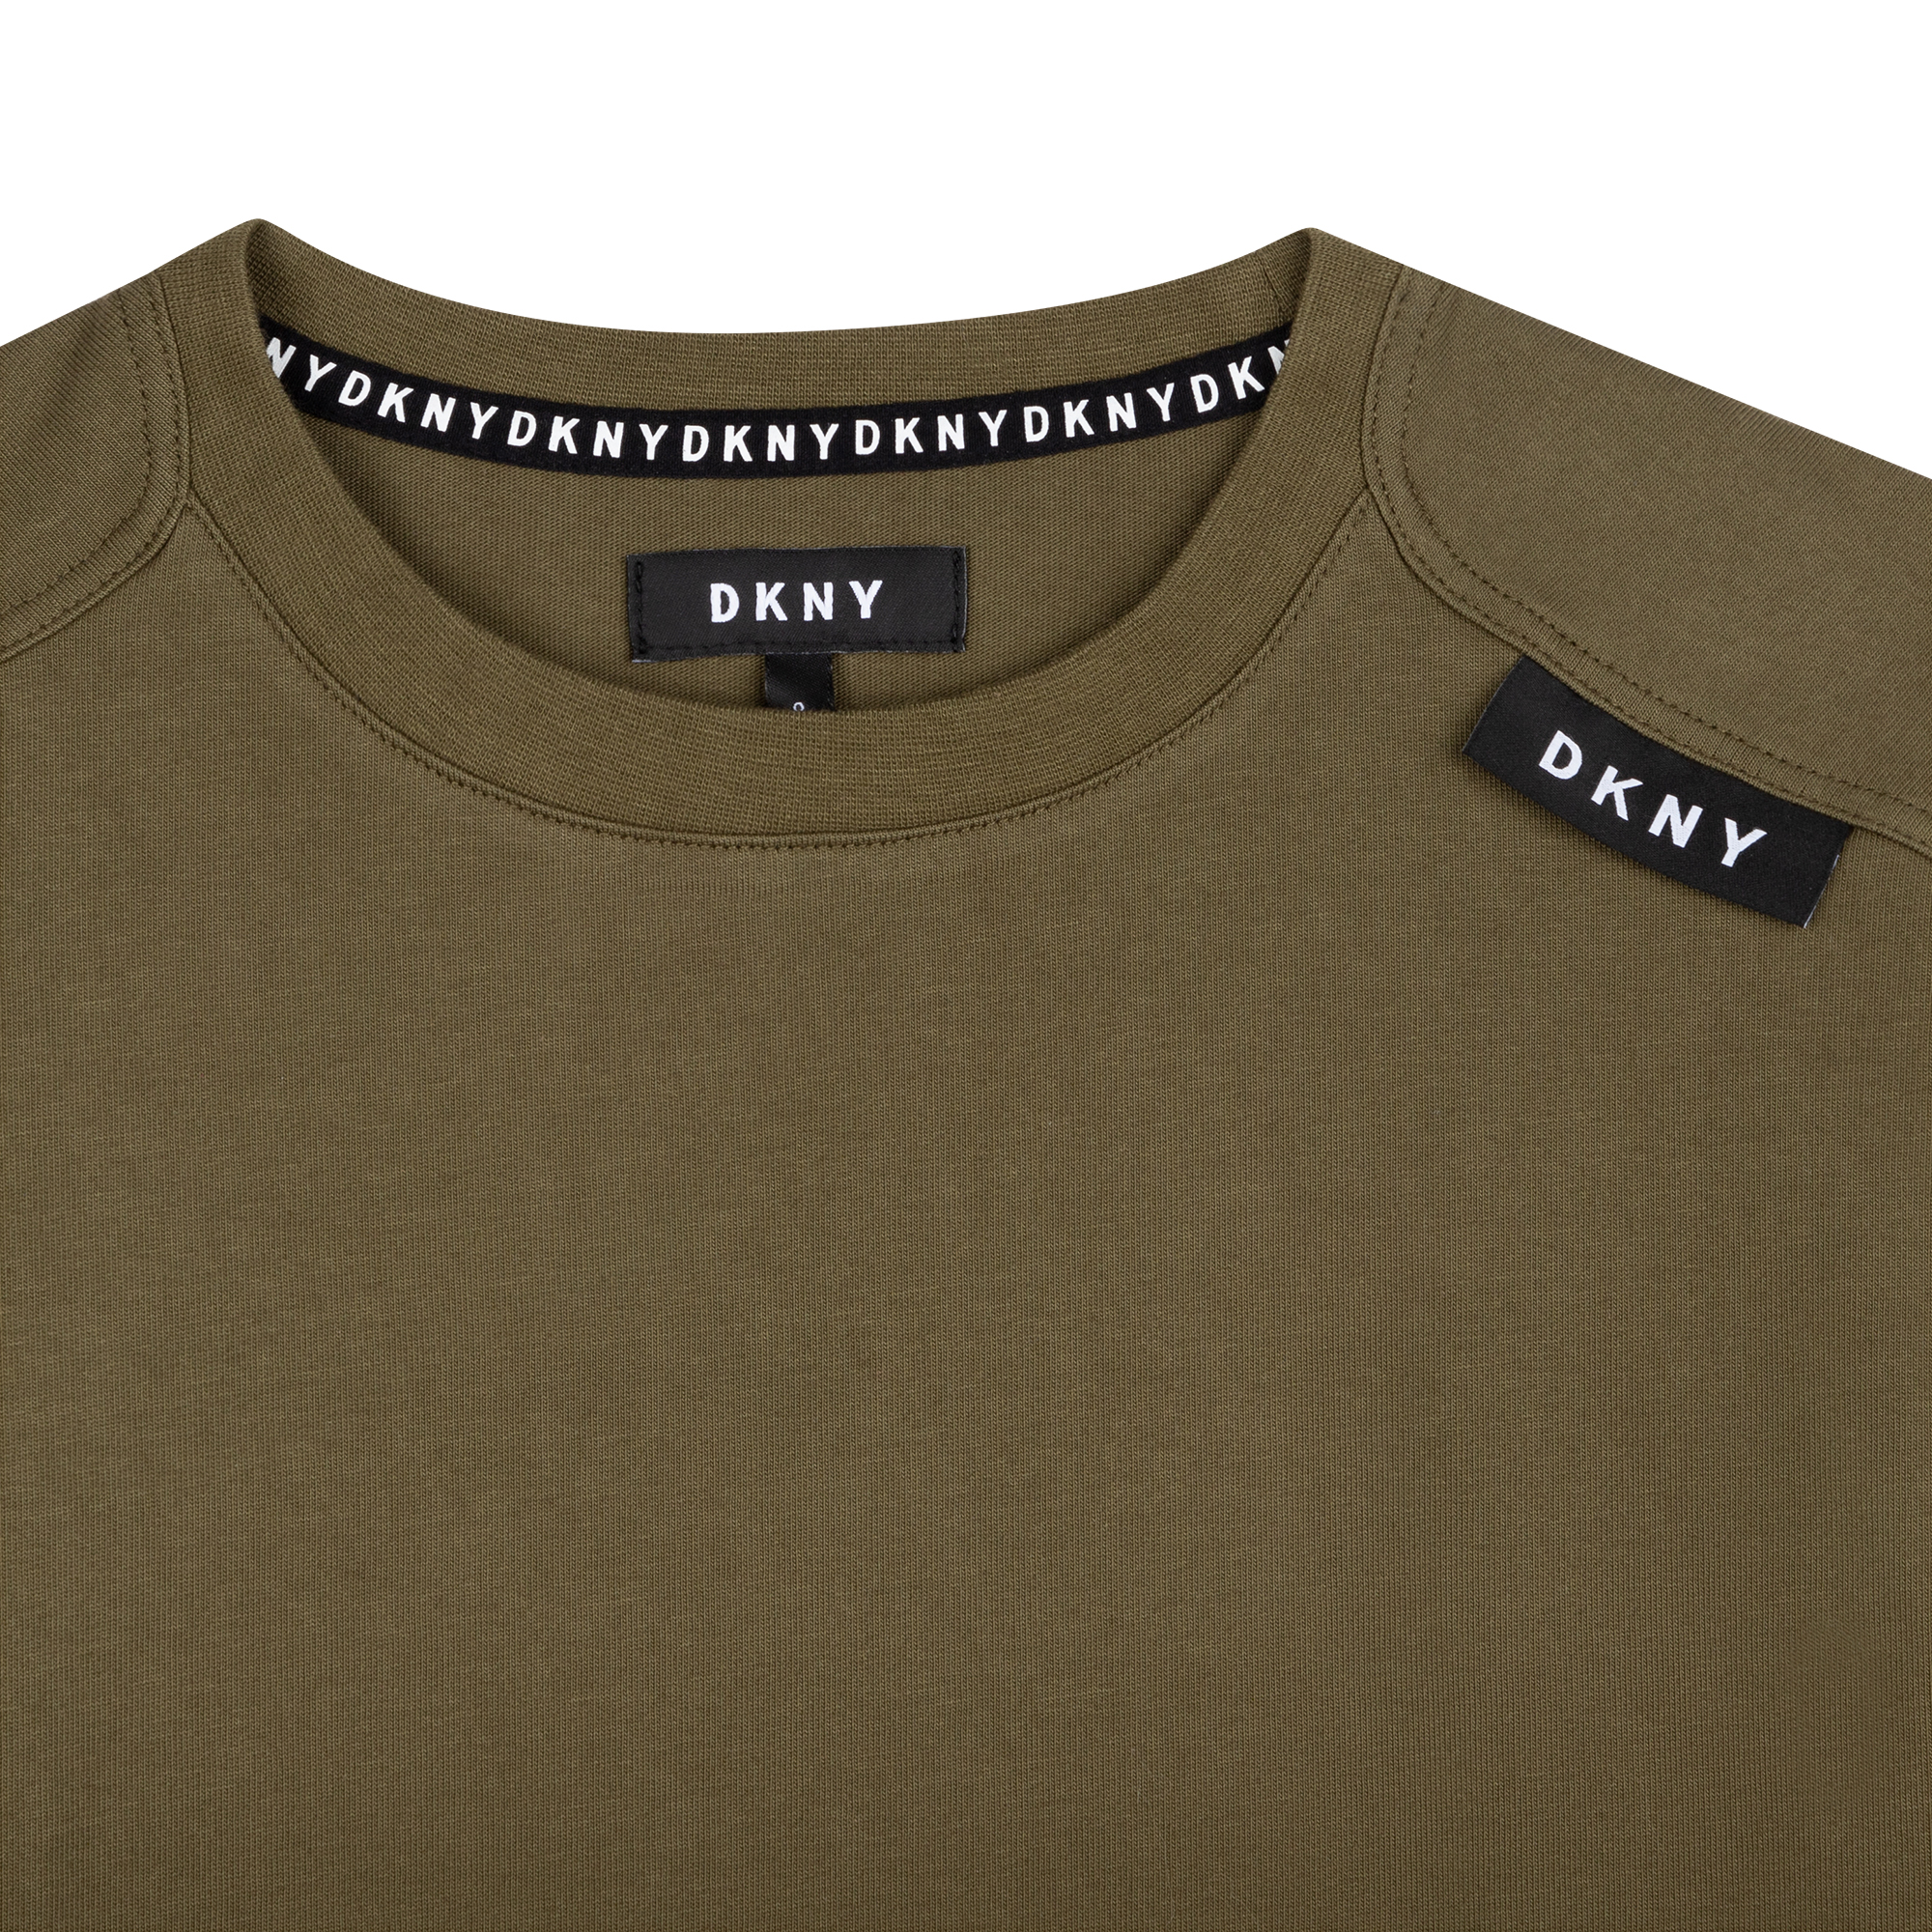 Weites Baumwolljersey-T-Shirt DKNY Für JUNGE